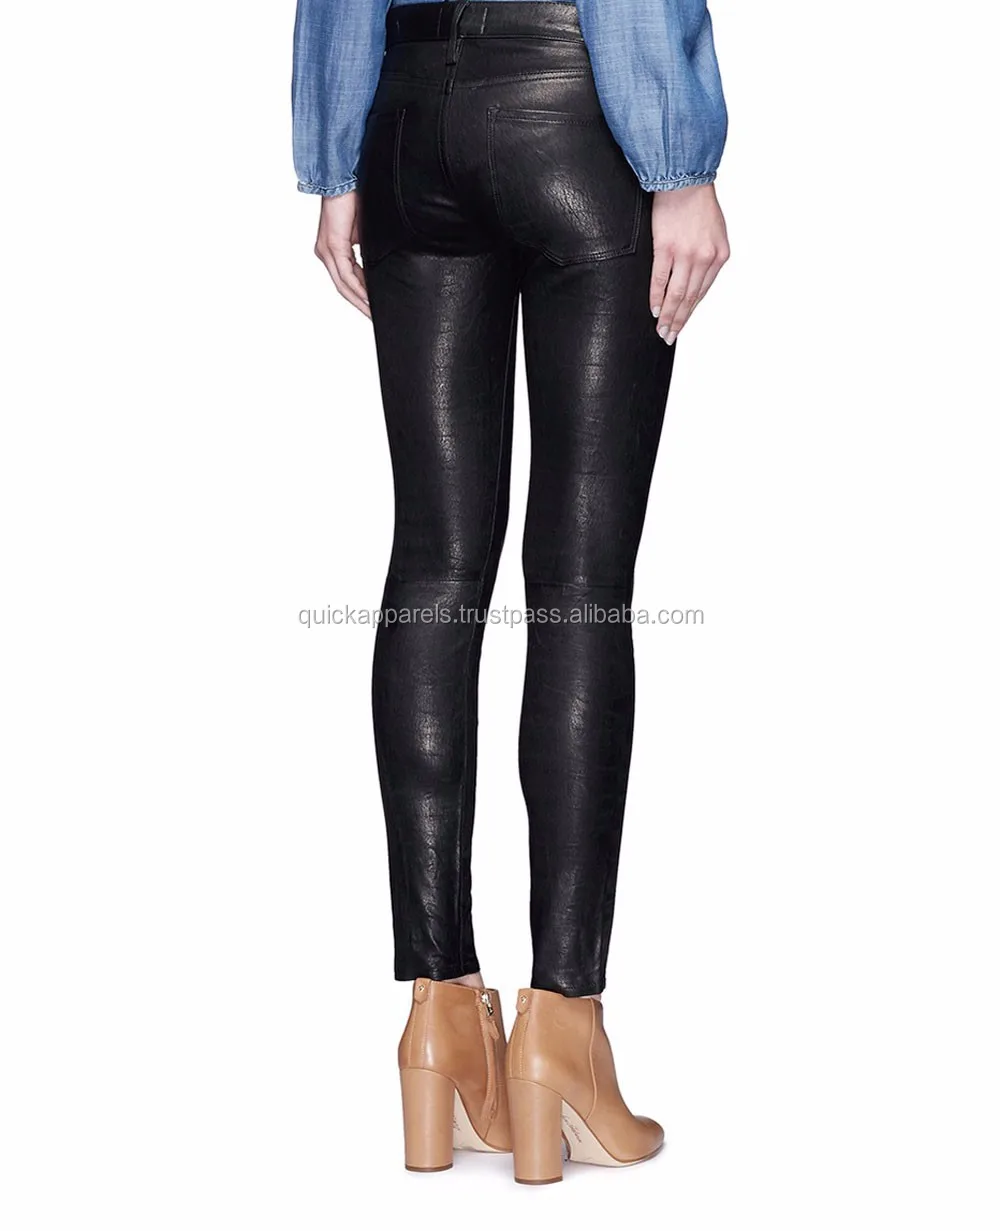 New Design Black Pu Leather Look Skinny Slim Women's Slim Pants - Buy ...